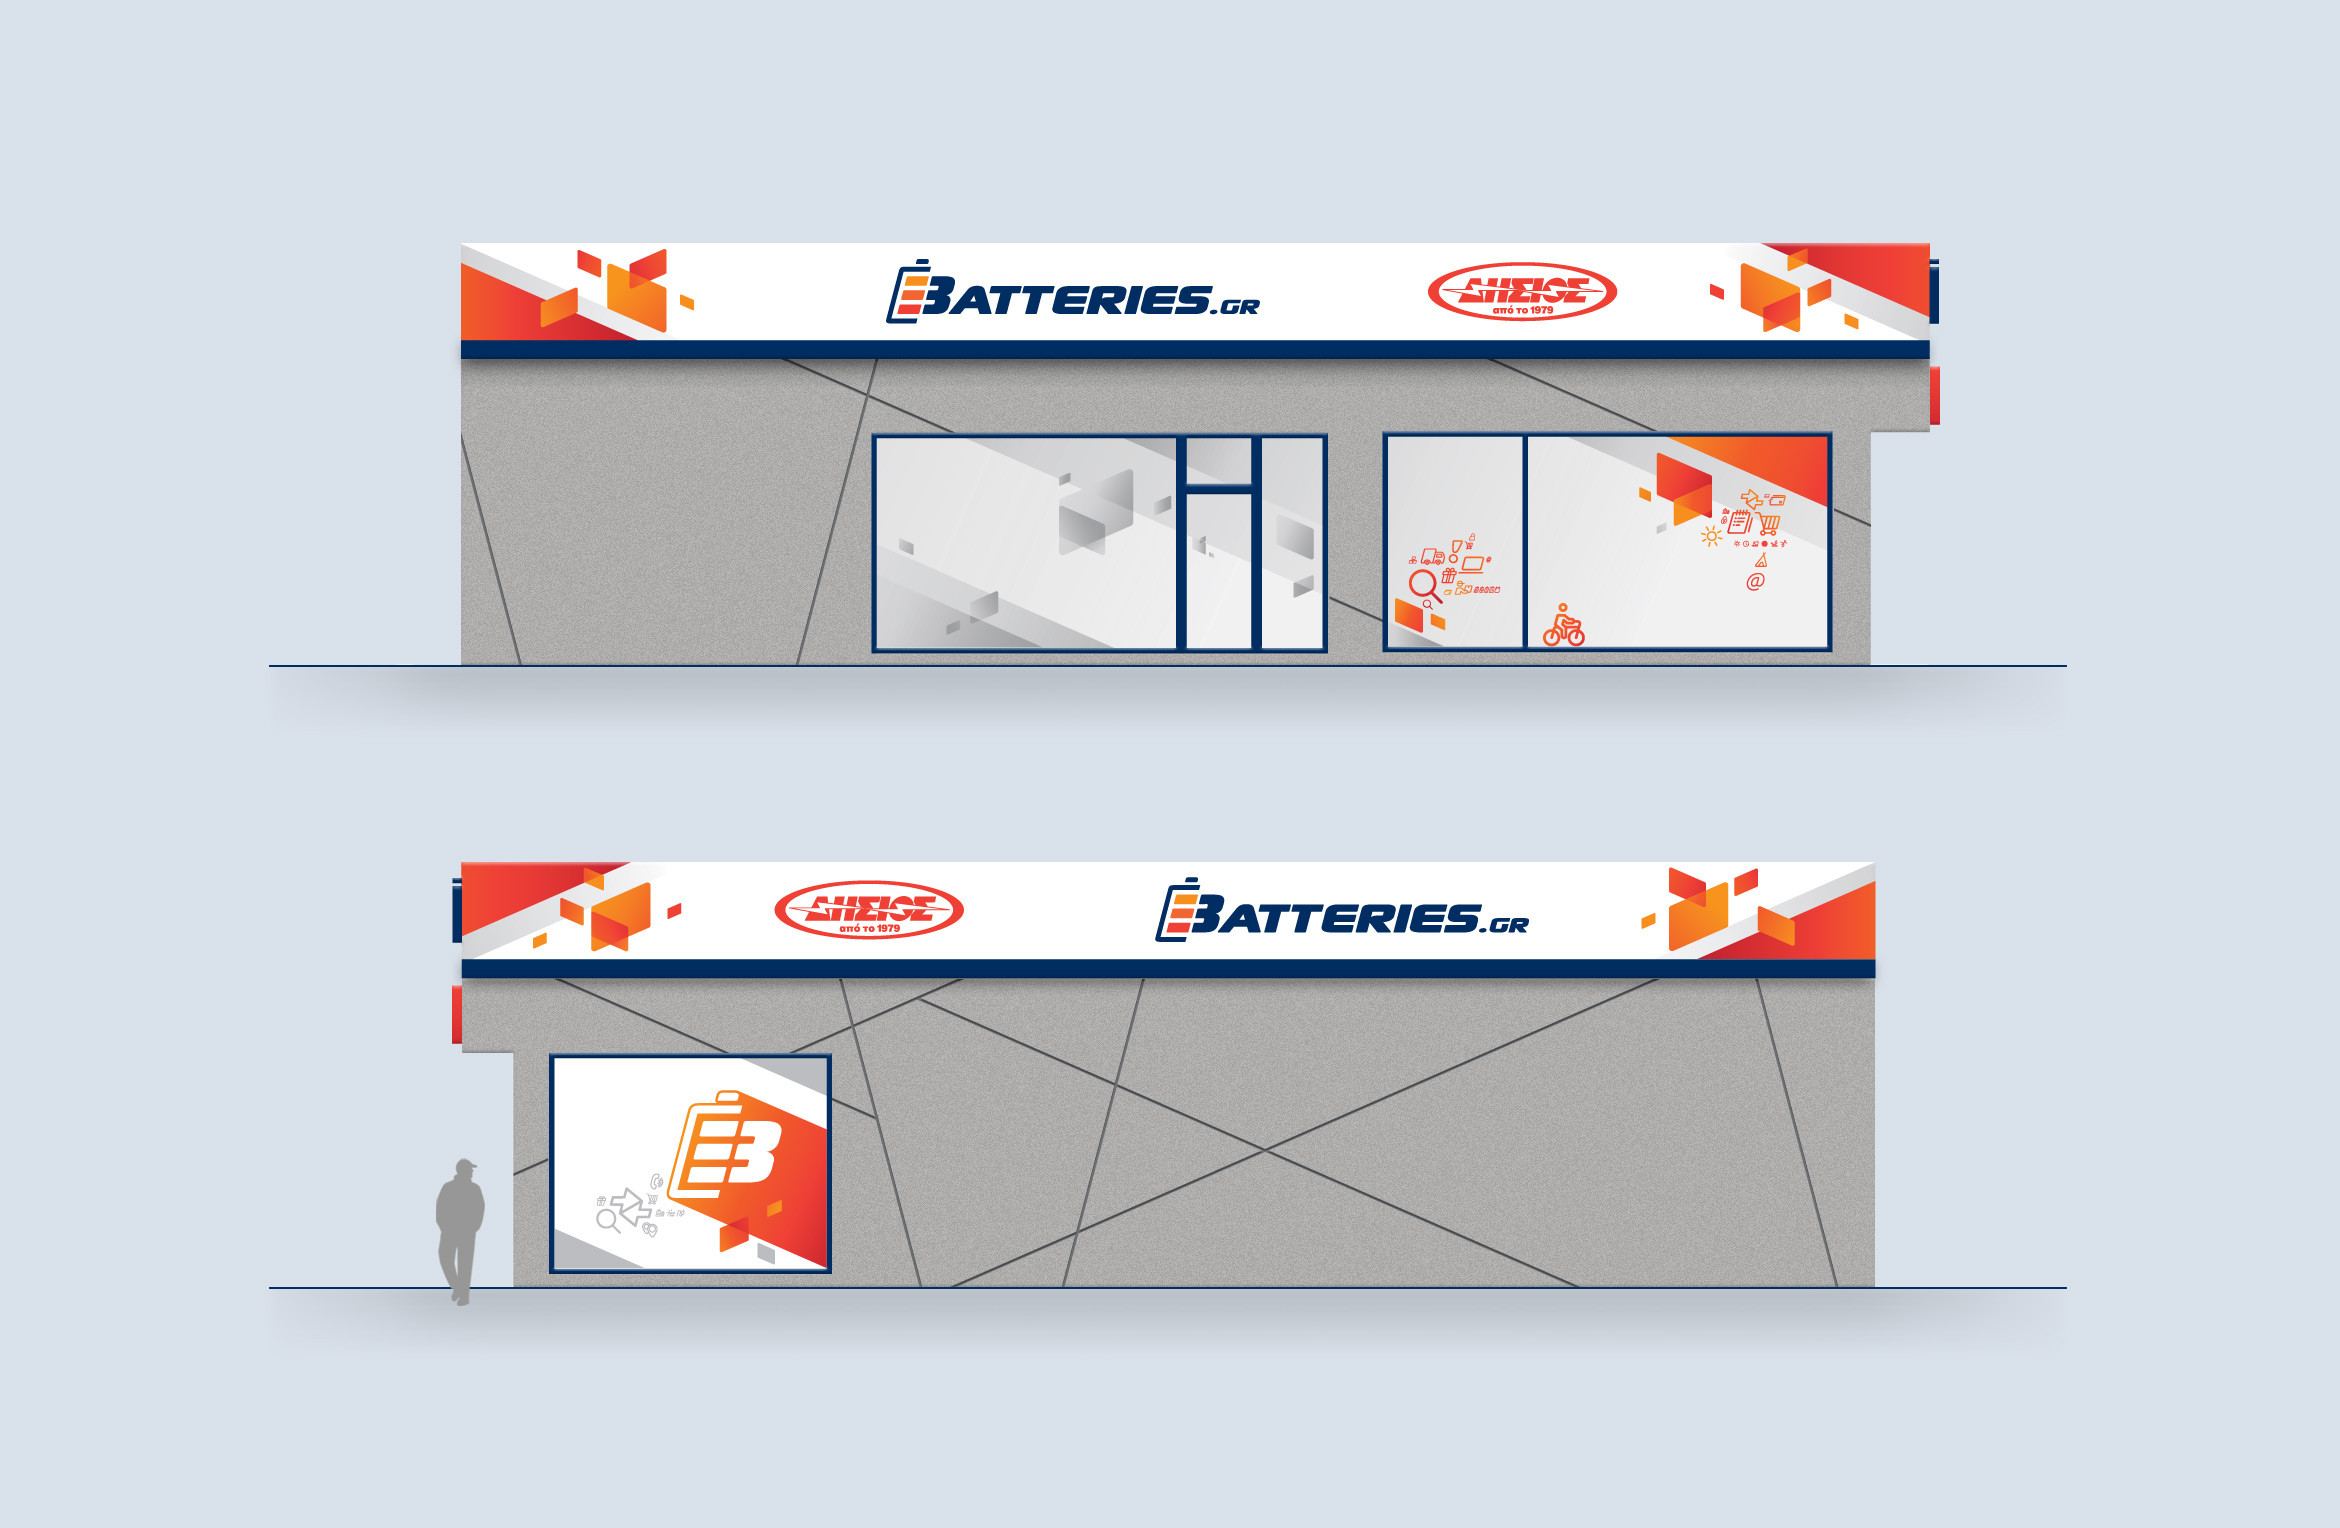 signage design for batteries.gr